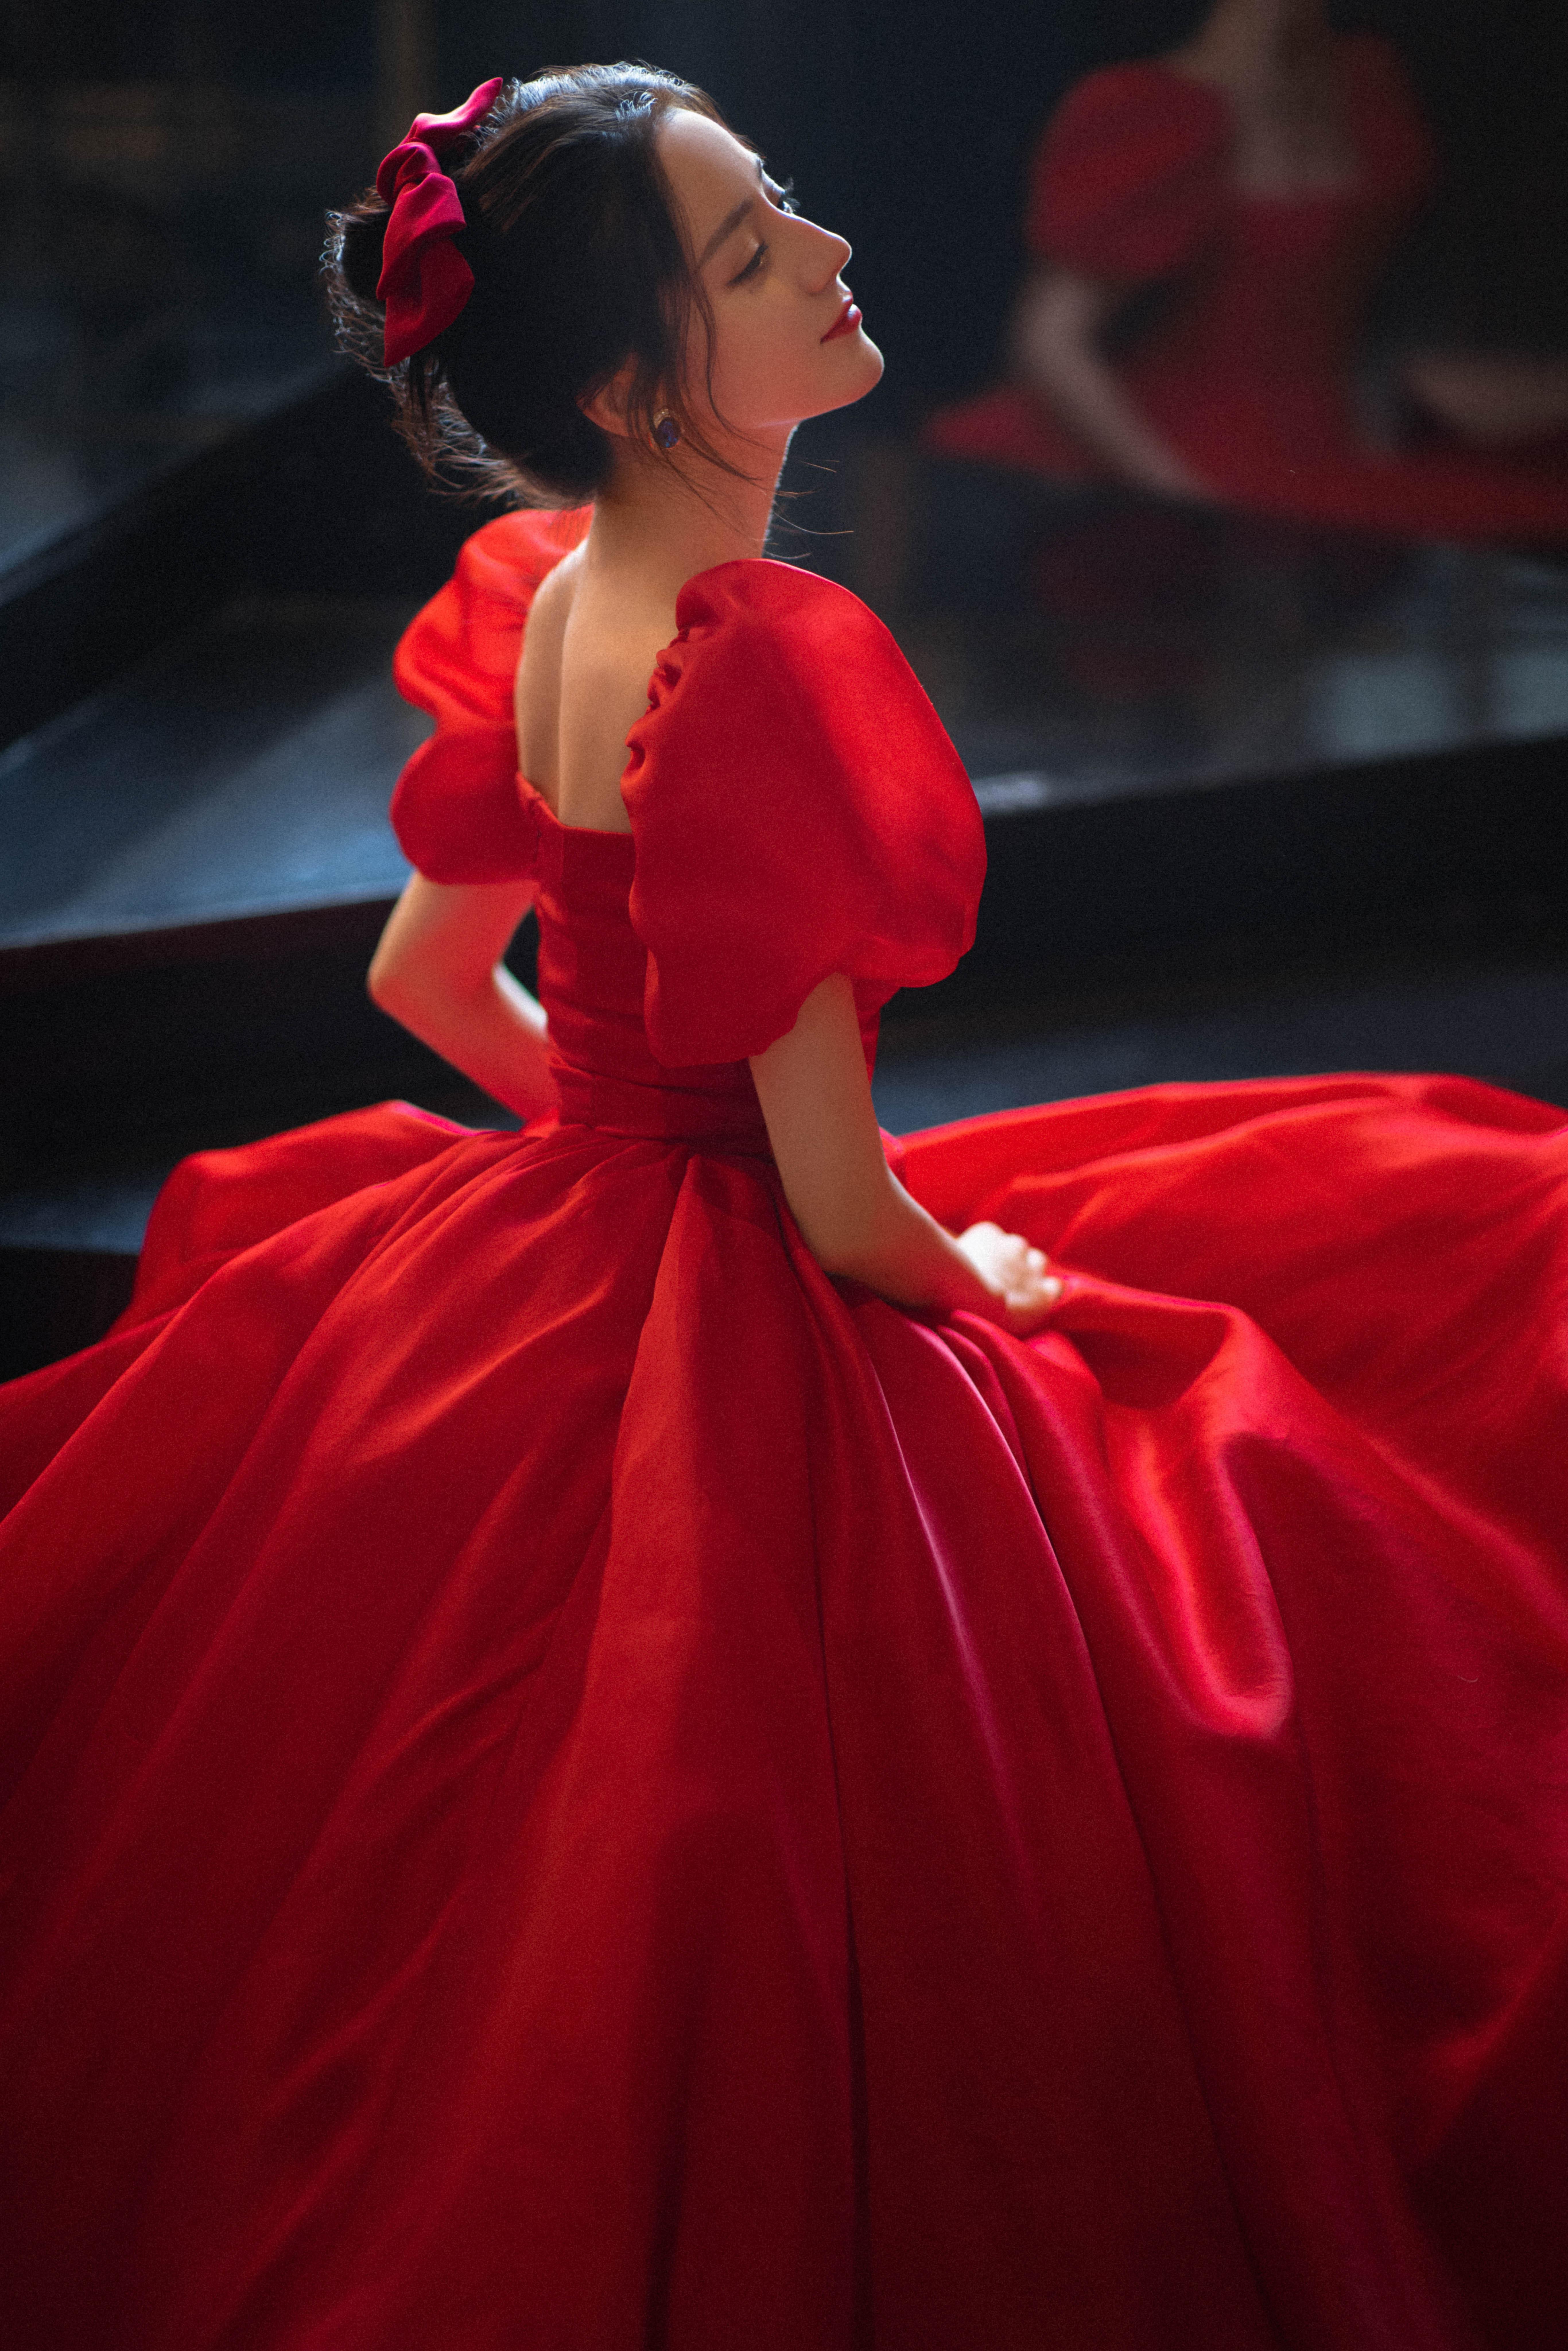 迪丽热巴穿红色长裙勾勒完美身材 泡泡袖配蝴蝶结美艳动人,